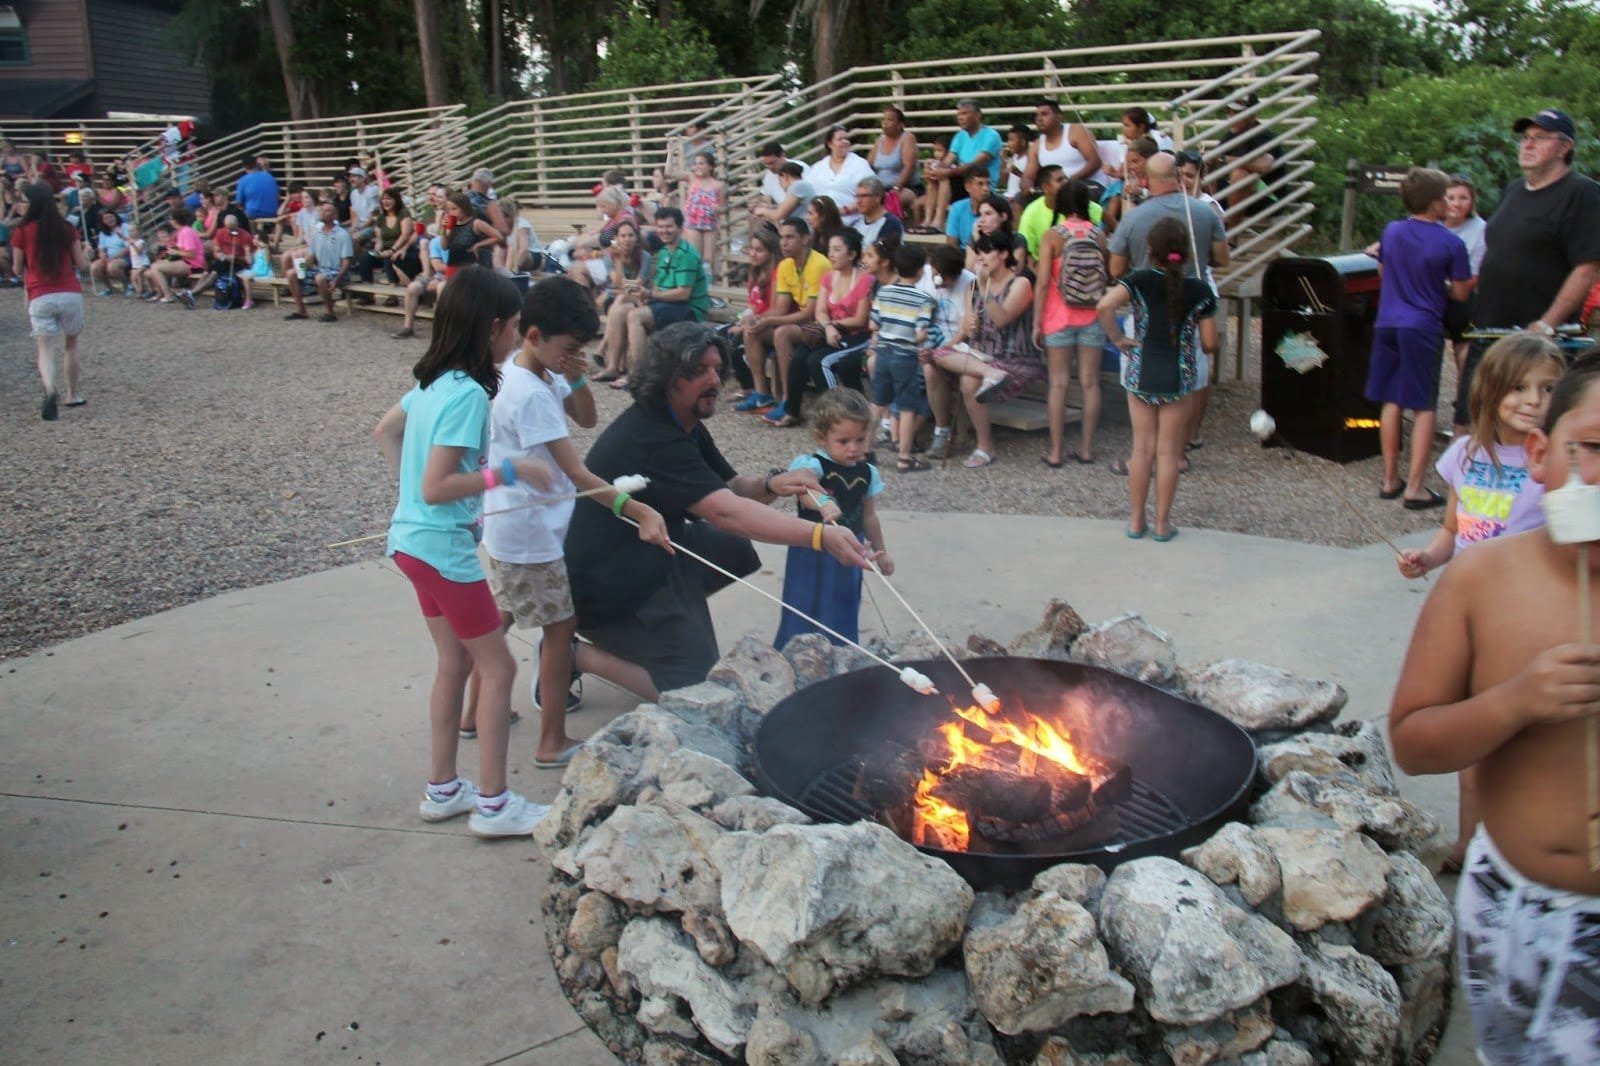 Chip 'n' Dale's Campfire - a fogueira do Tico e Teco